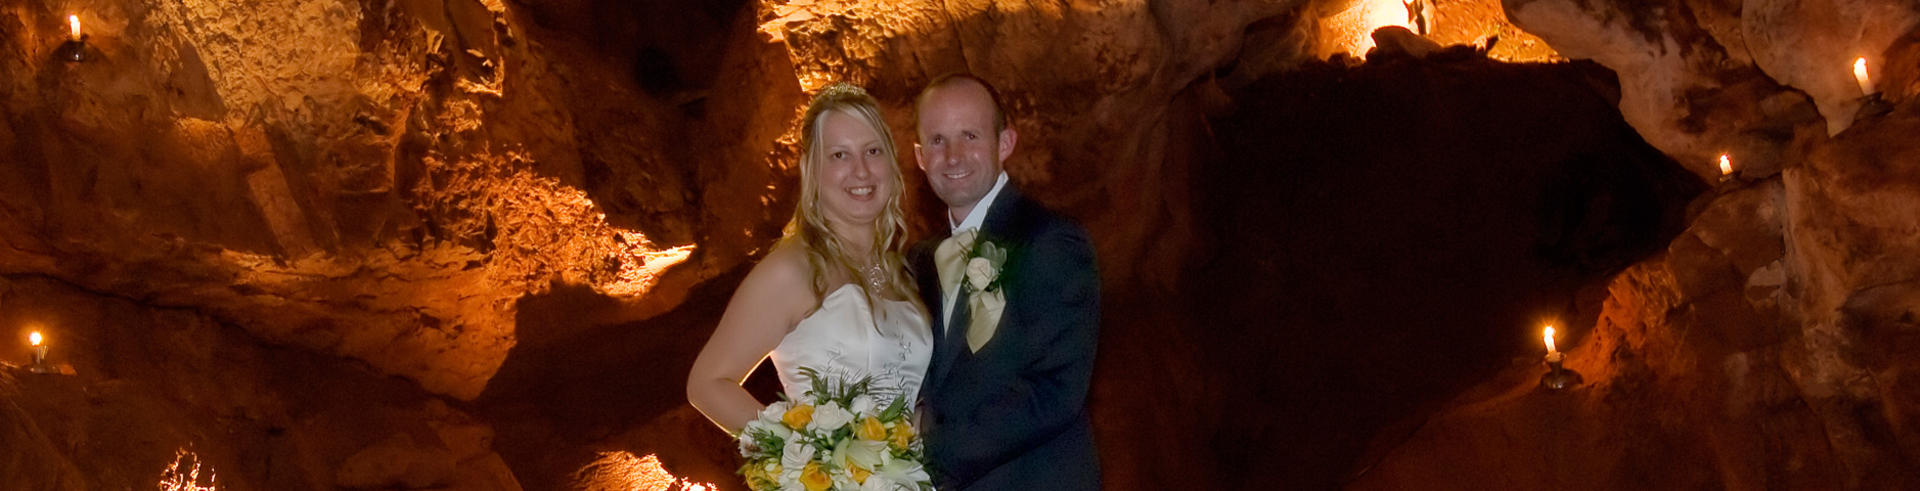 Weddings at Kents Cavern